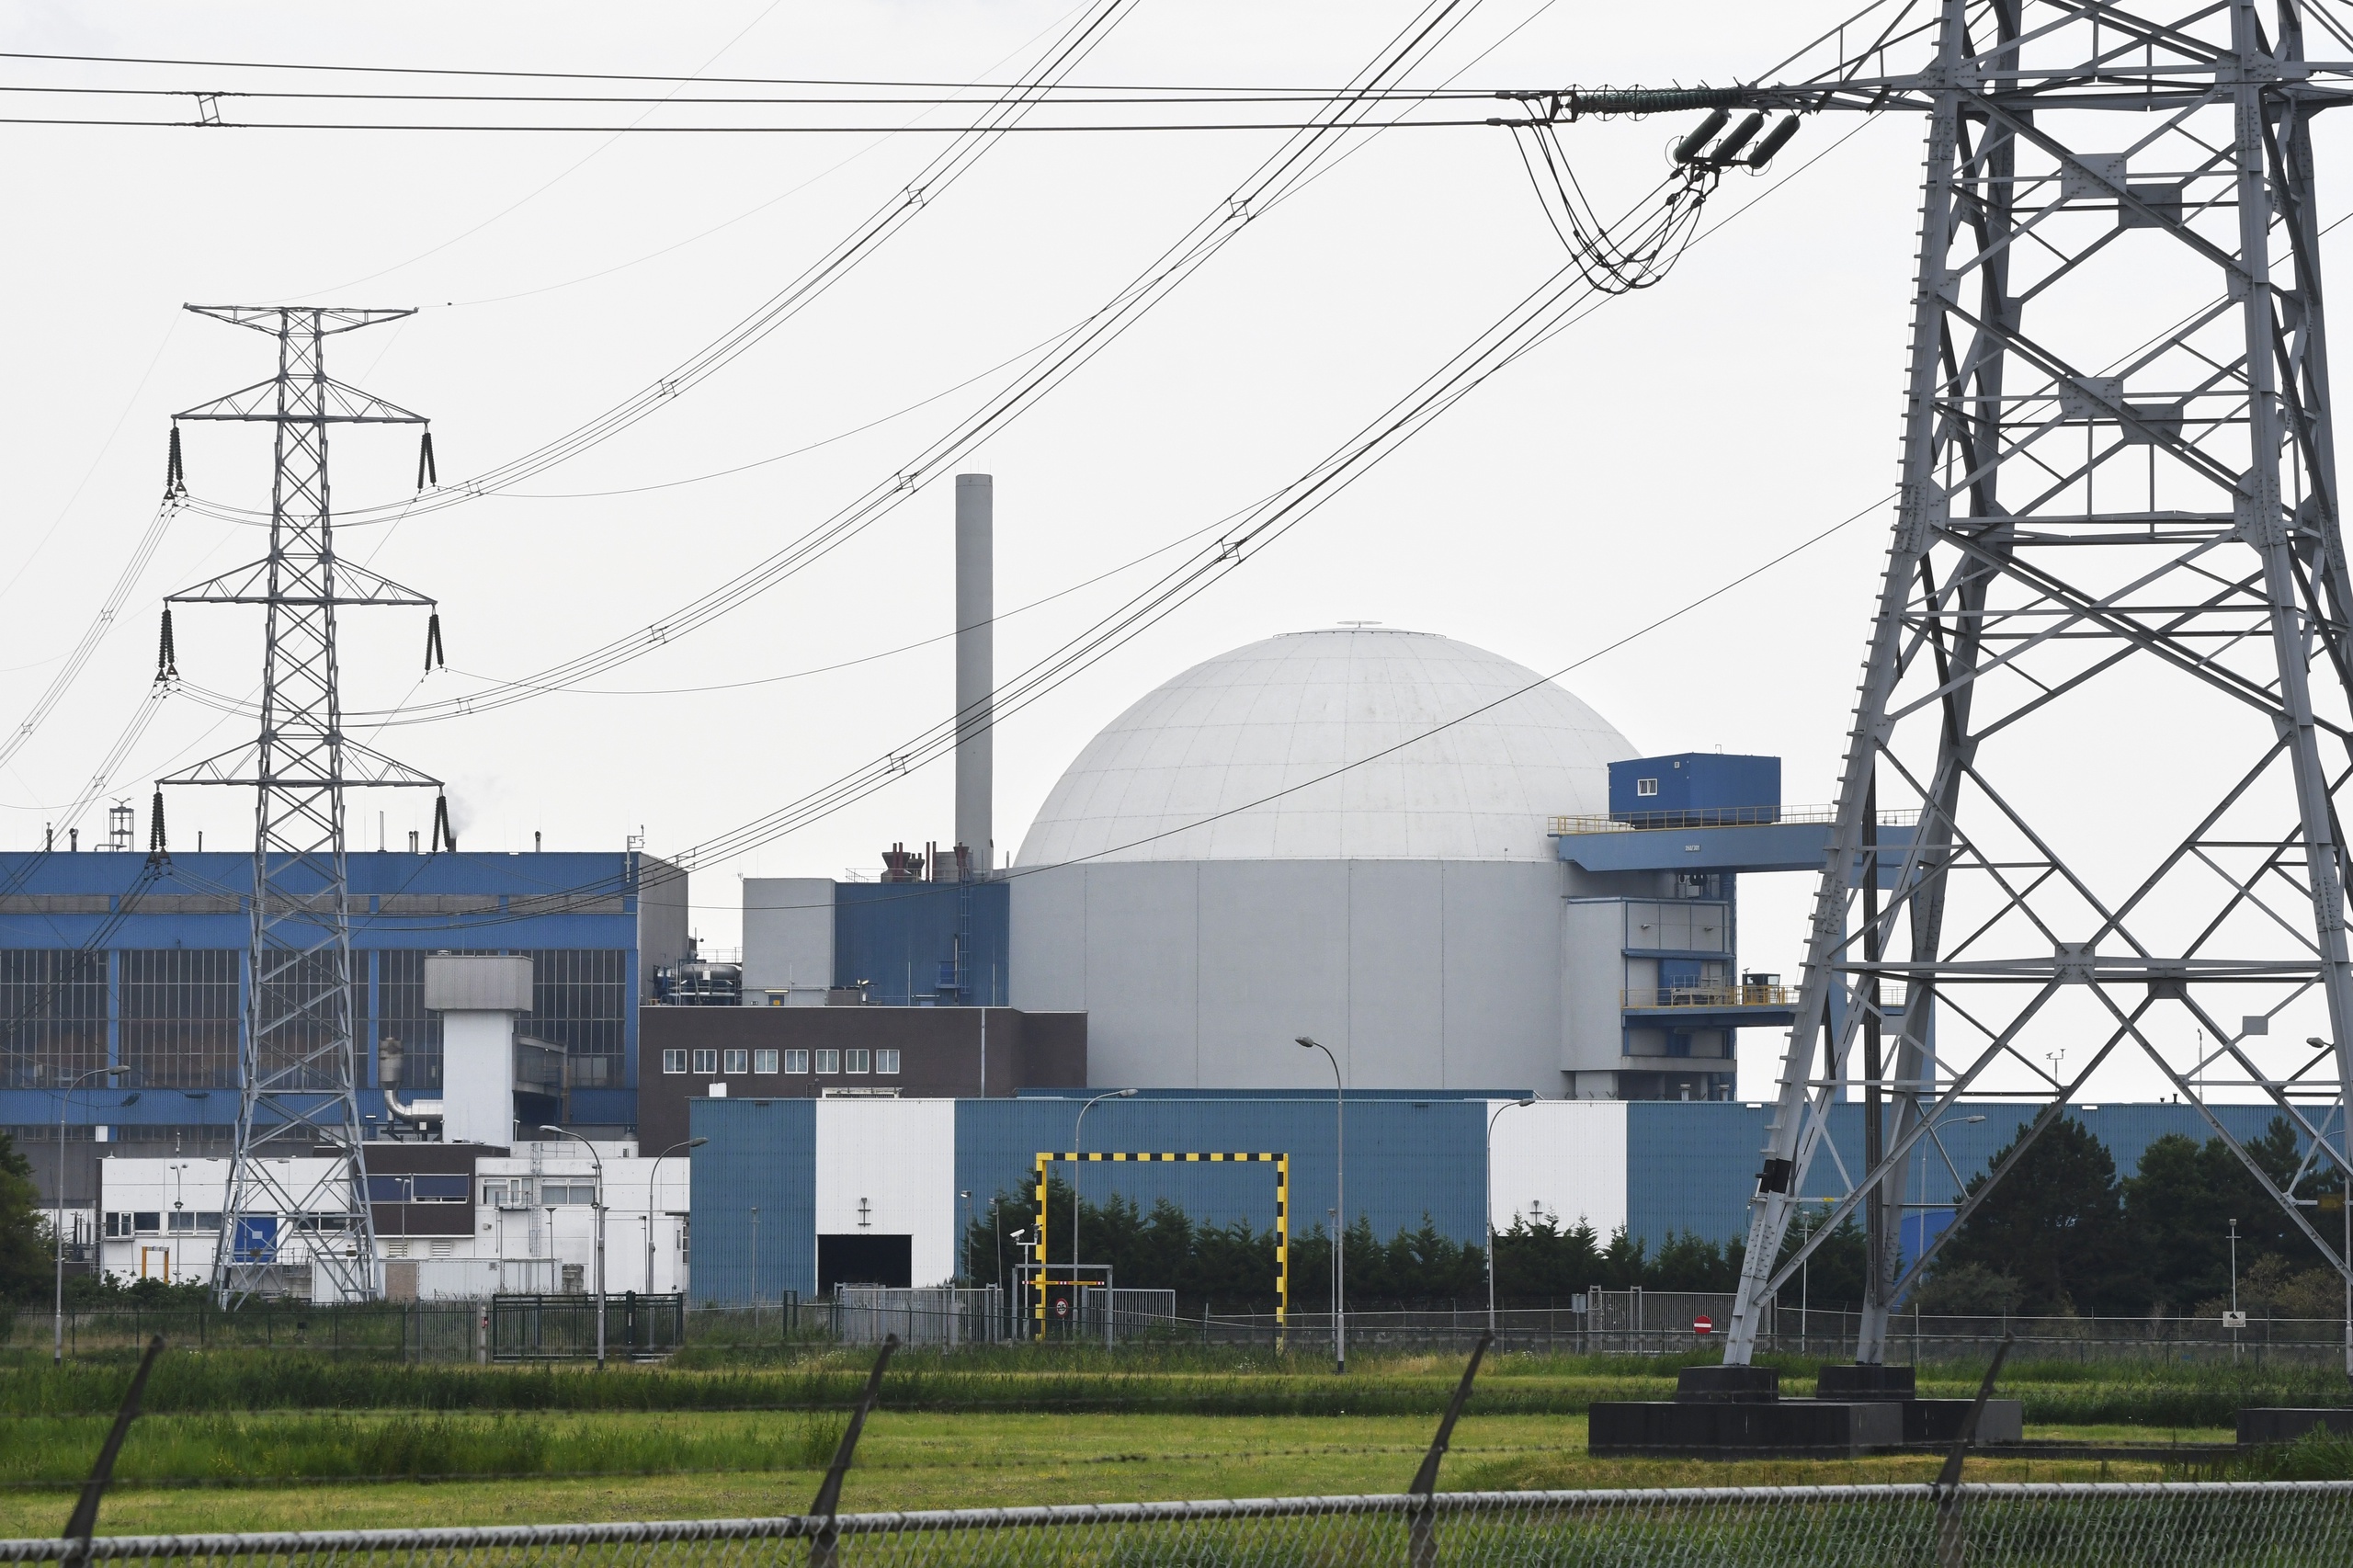 Het is nog lang niet zeker dat de beoogde nieuwe kerncentrales in Borssele terechtkomen. Dat benadrukt burgemeester Gerben Dijksterhuis van de gemeente. 'Onze inwoners kijken met zorgen naar de gevolgen.'